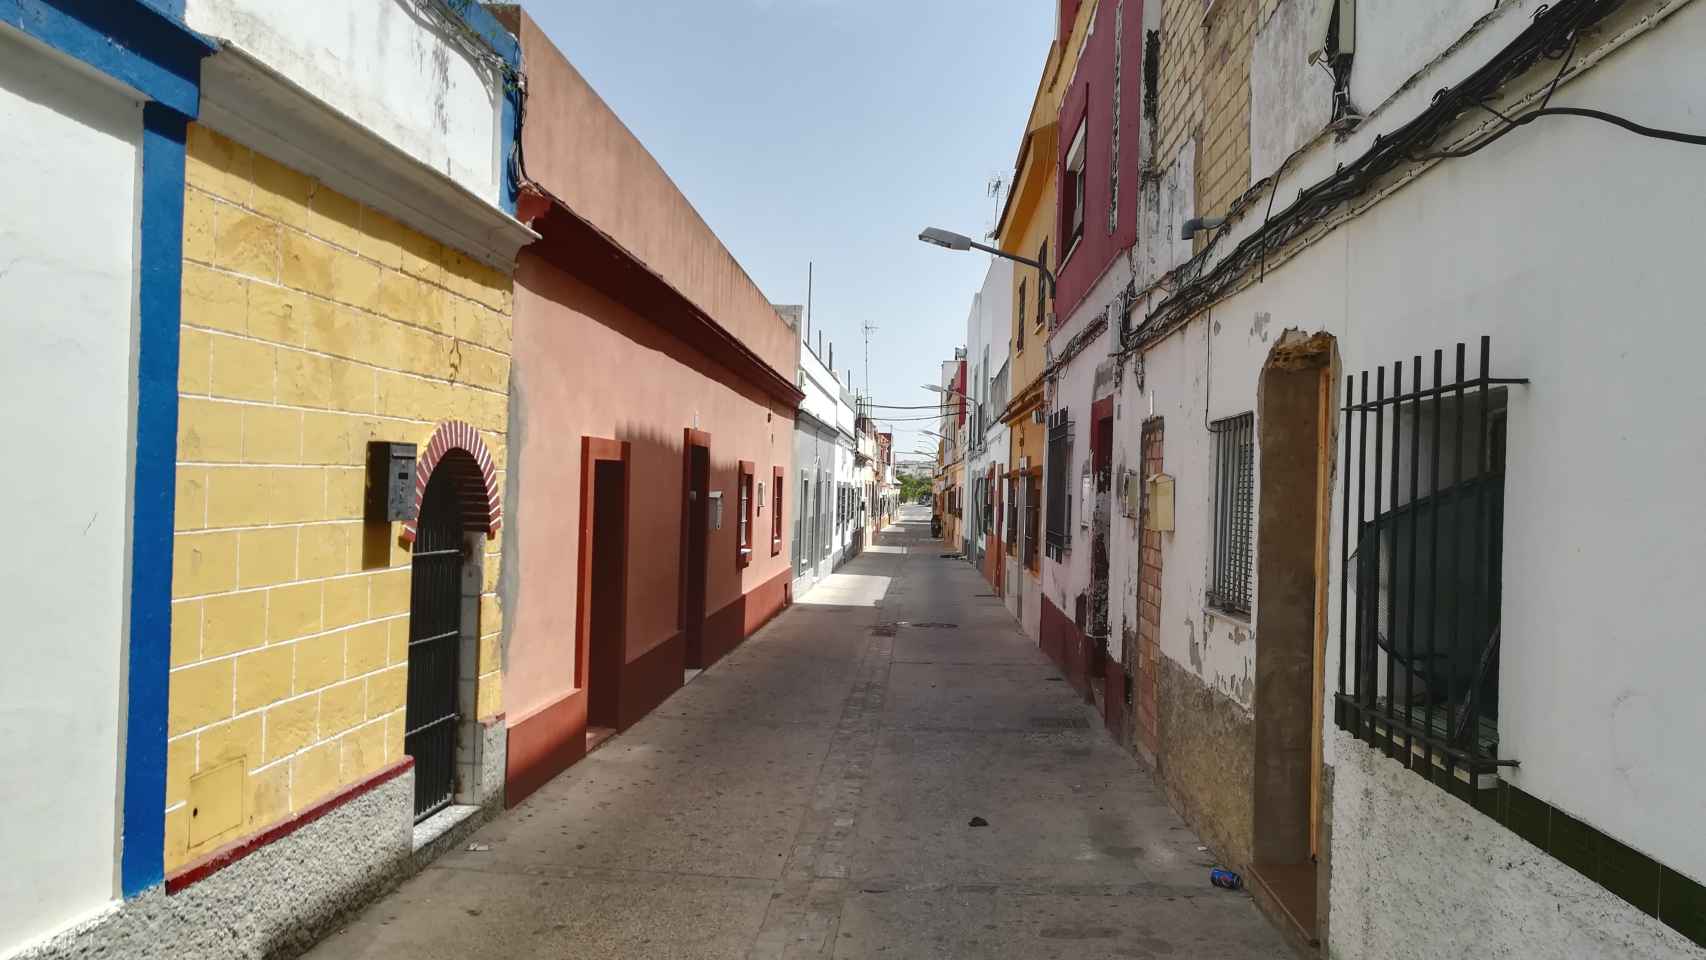 La vivienda de Paqui García está ubicada en esta calle de El Puerto de Santa María (Cádiz), de donde ella procede.